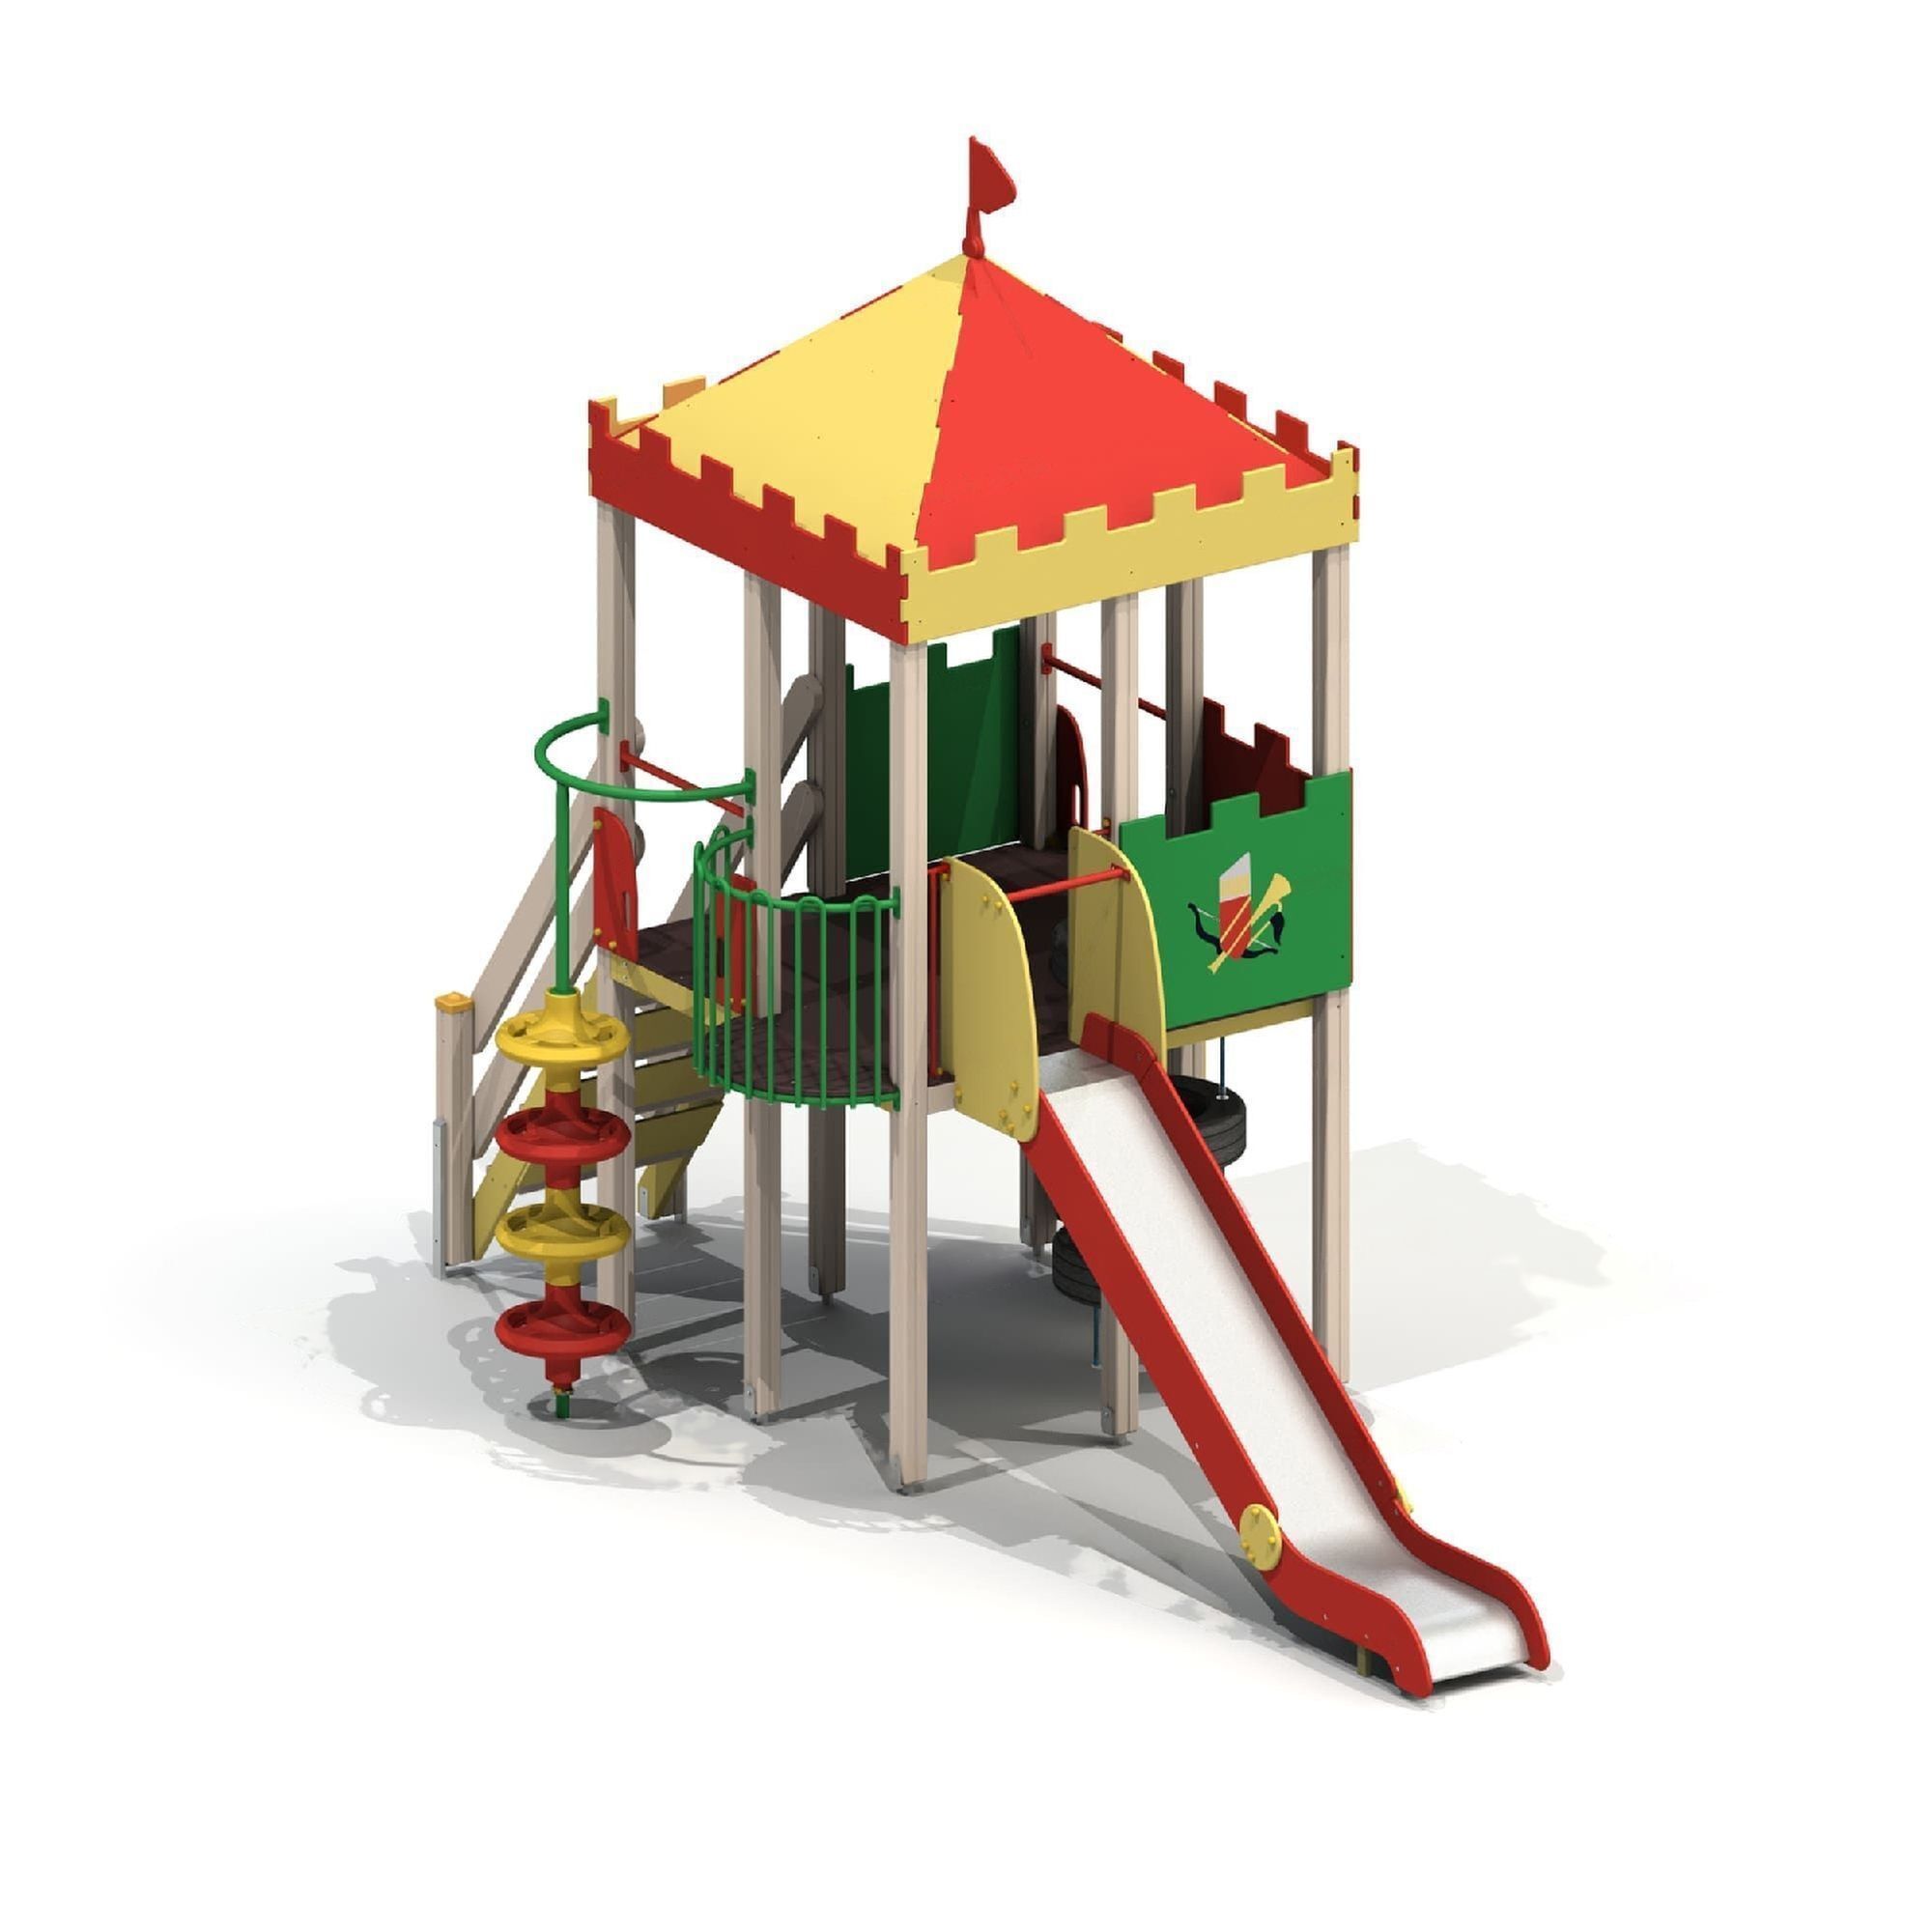 Детский игровой комплекс «Сторожевая башня» 5663 | KMK — Производитель  металлоконструкций, качественно и надежно